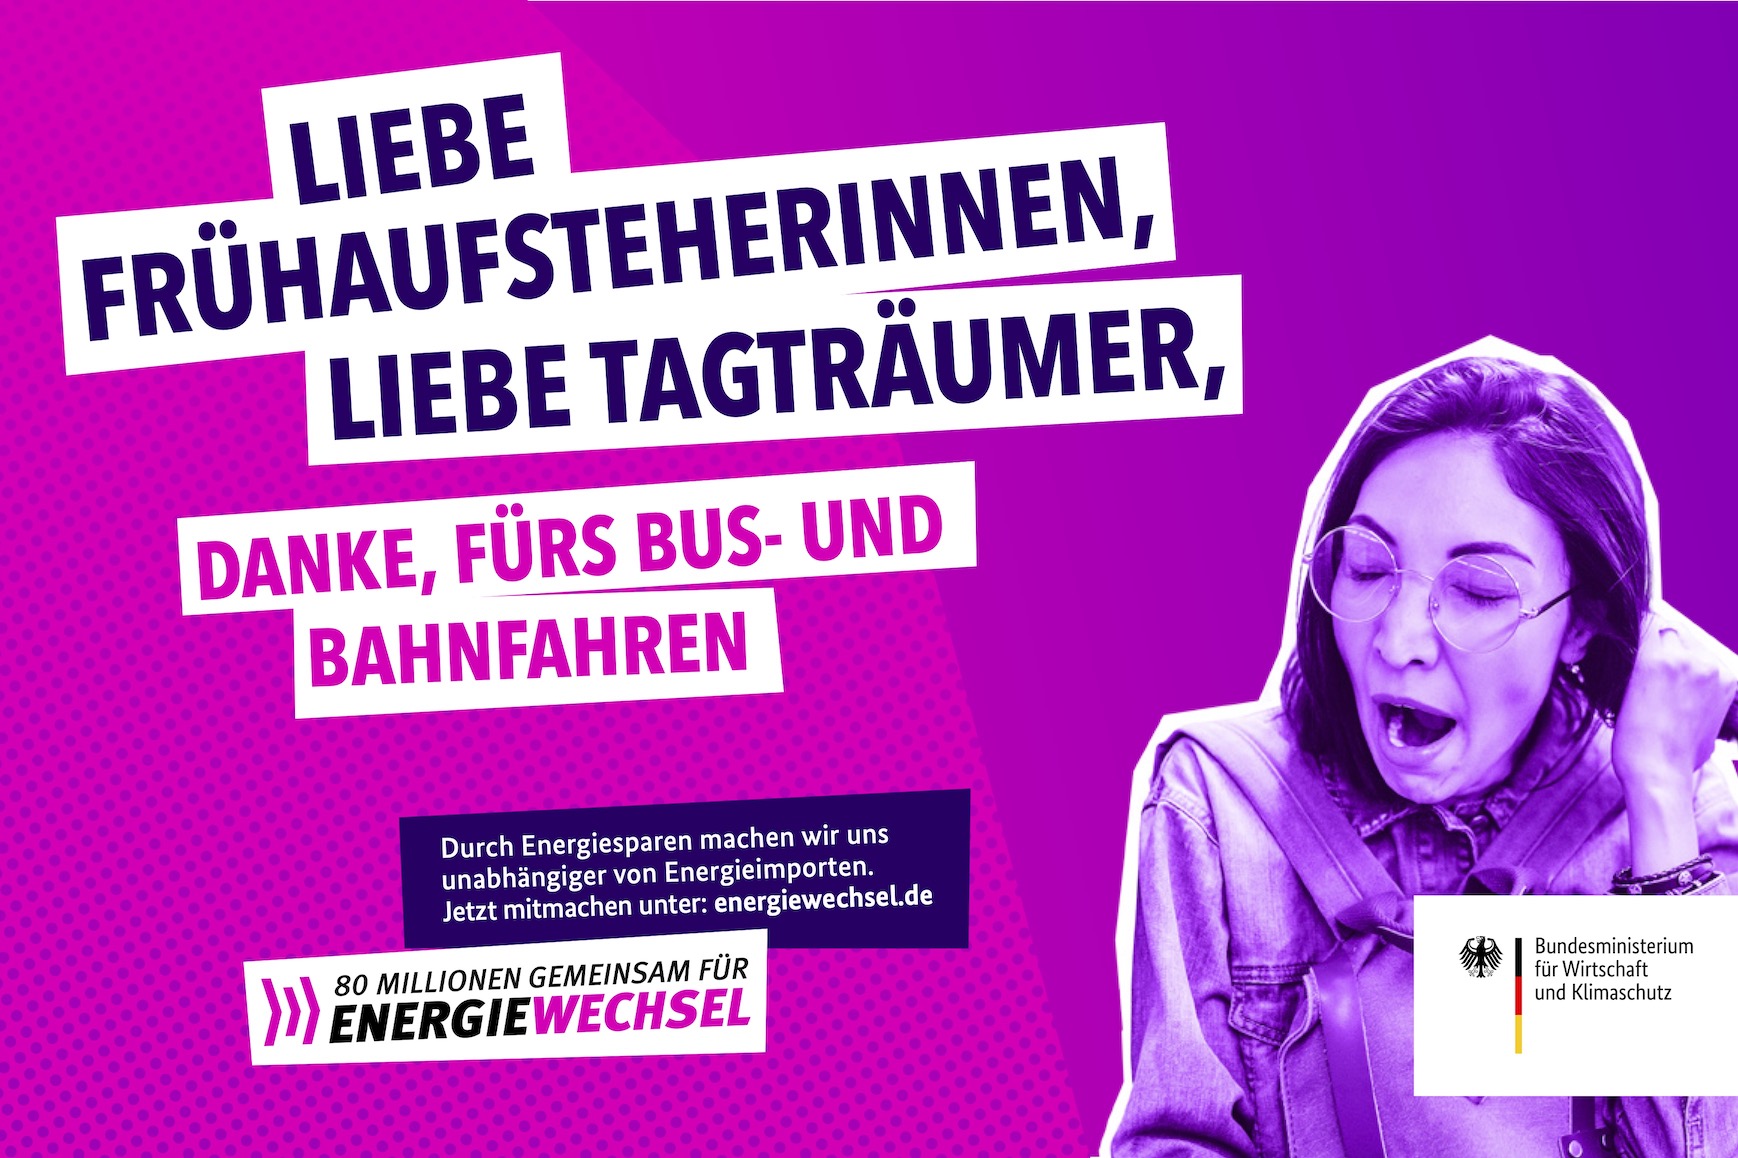 Kampagnenmotiv „Liebe Frühaufsteherinnen, liebe Tagträumer” | 80 Millionen gemeinsam für Energiewechsel